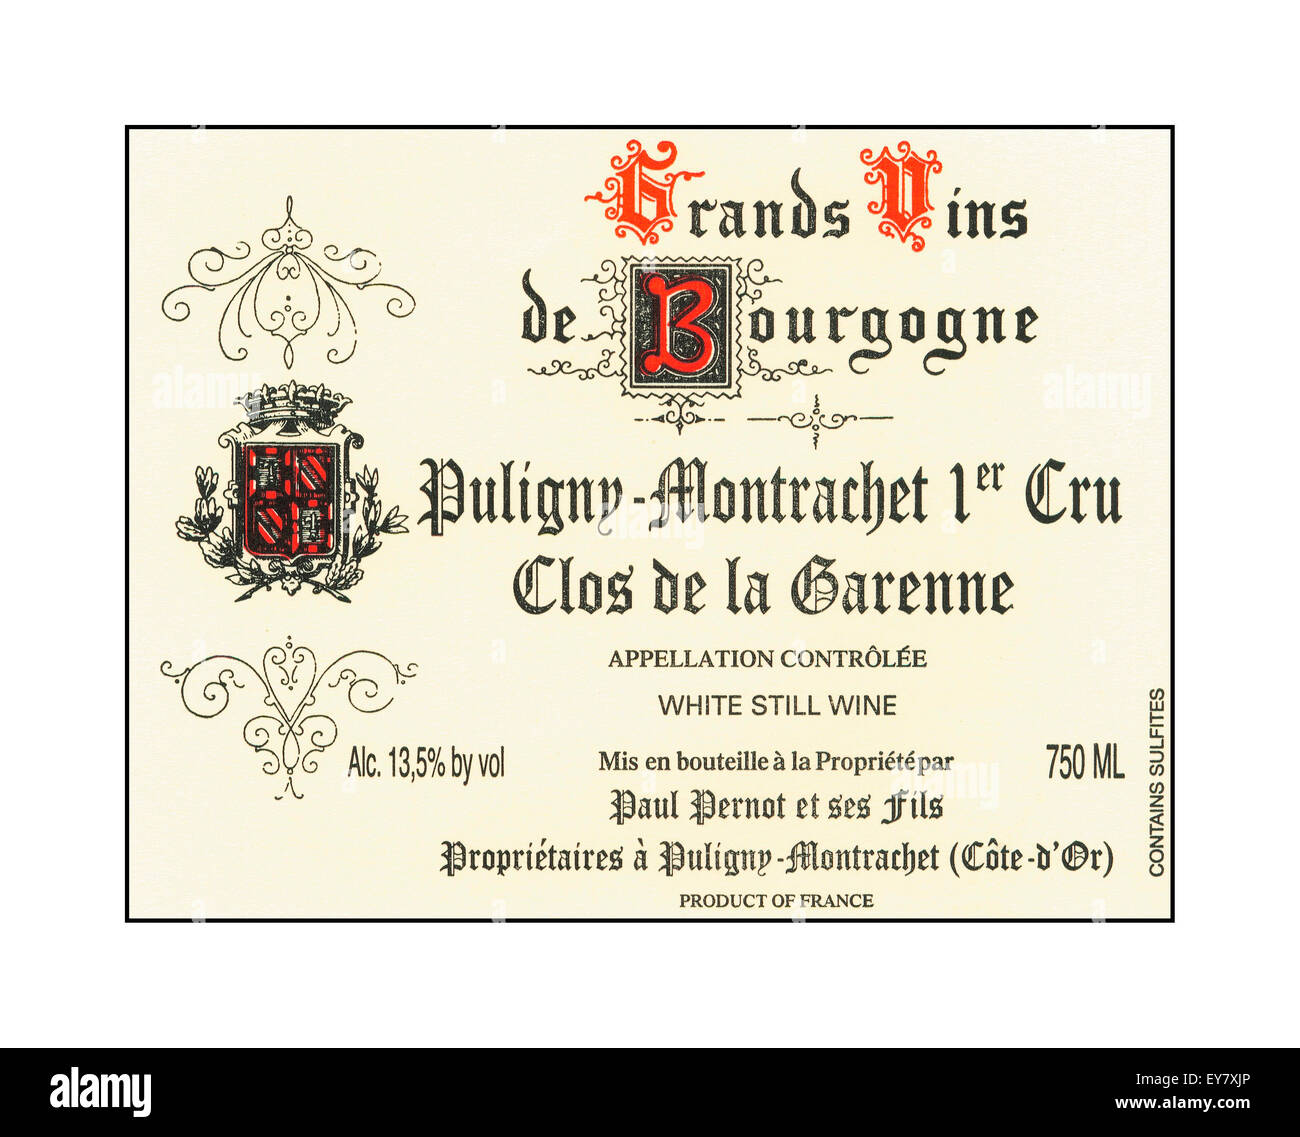 Etiqueta para botella de vino francés Puligny-Montrachet 1er Cru Clos de la Garenne Cote d'Or Borgoña Francia Foto de stock